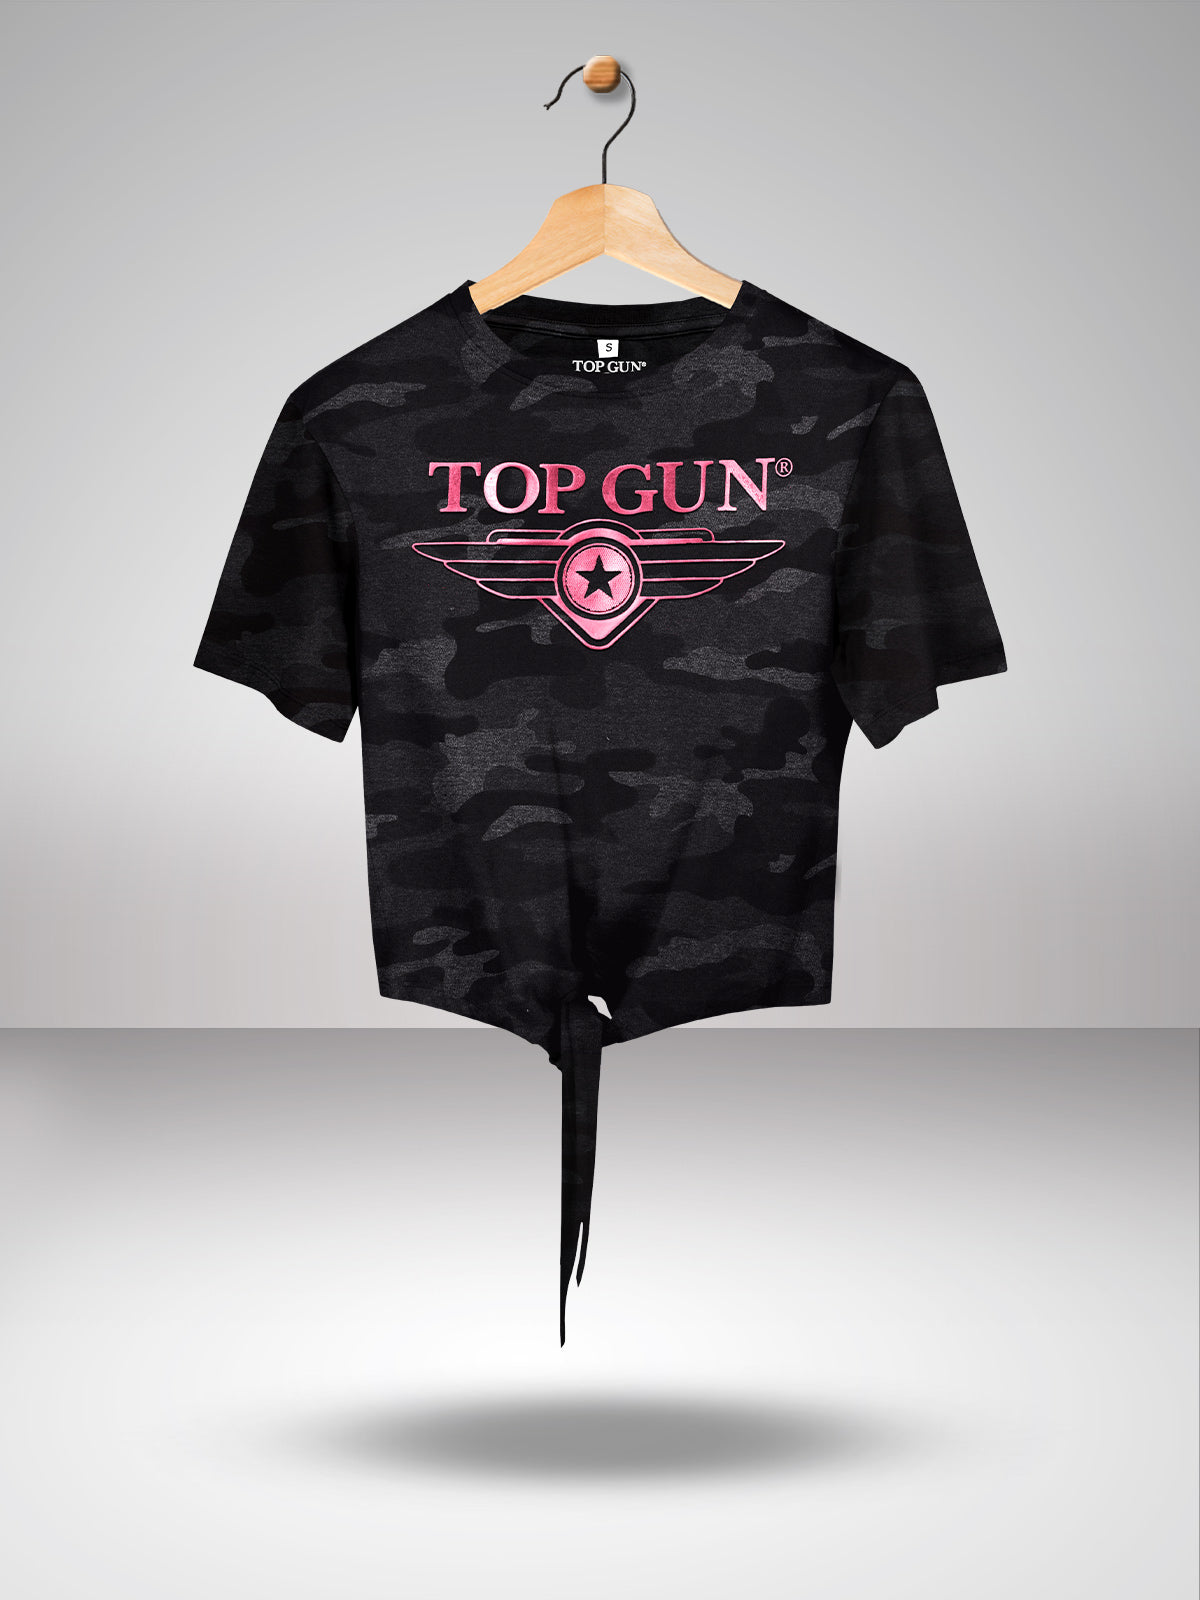 Top Gun: Rainbow Foil Print Women's T-Shirt Crop Top - Navy L / Navy